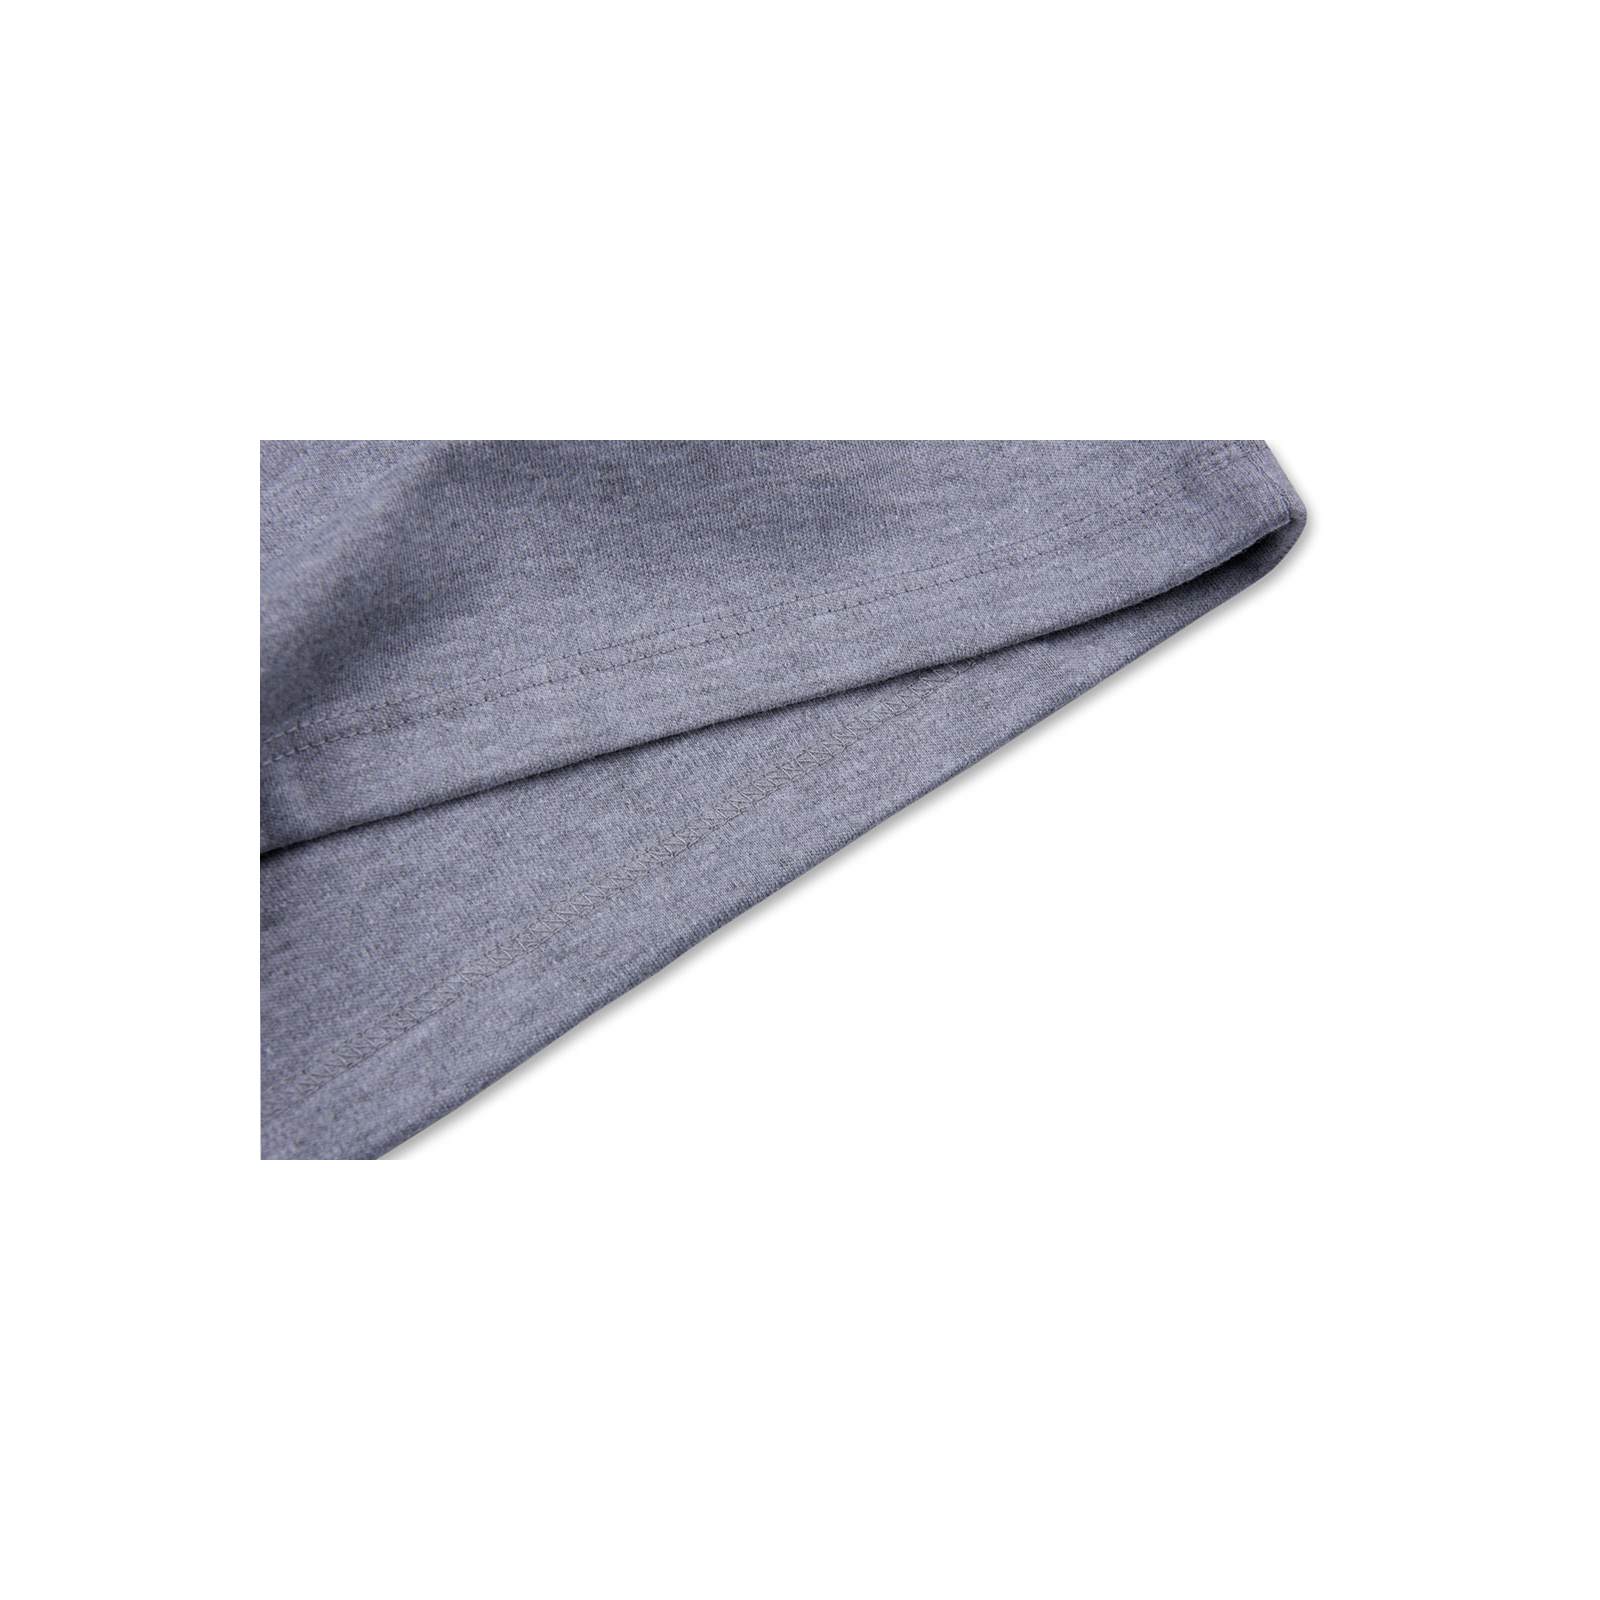 Кофта Lovetti водолазка серая меланжевая (1011-98-gray) зображення 5